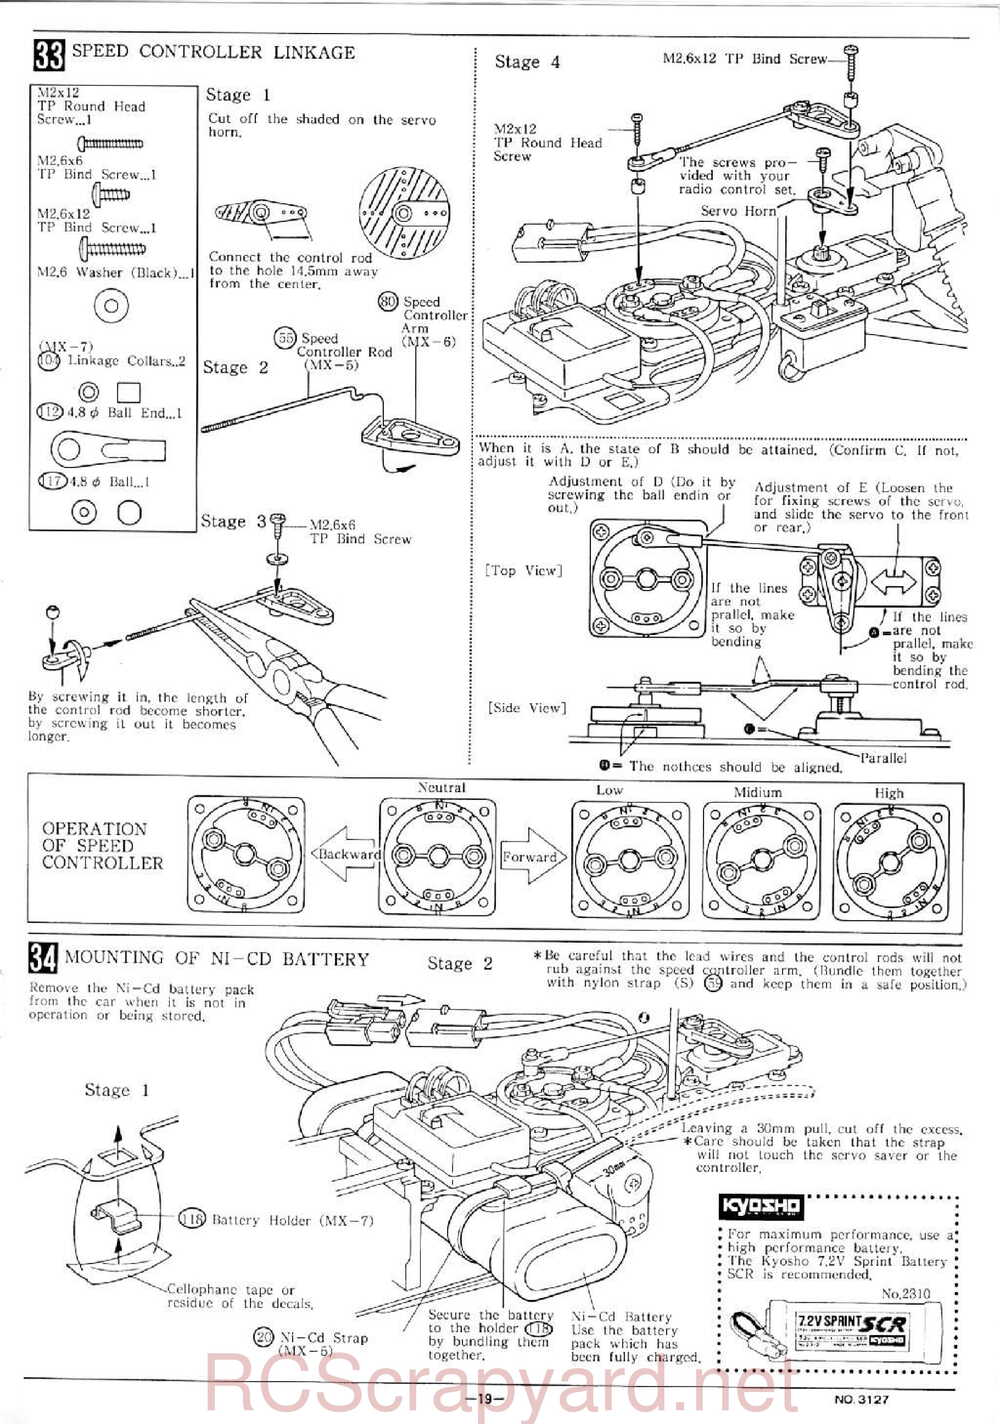 Kyosho - 3127 - Maxxum FF - Manual - Page 19